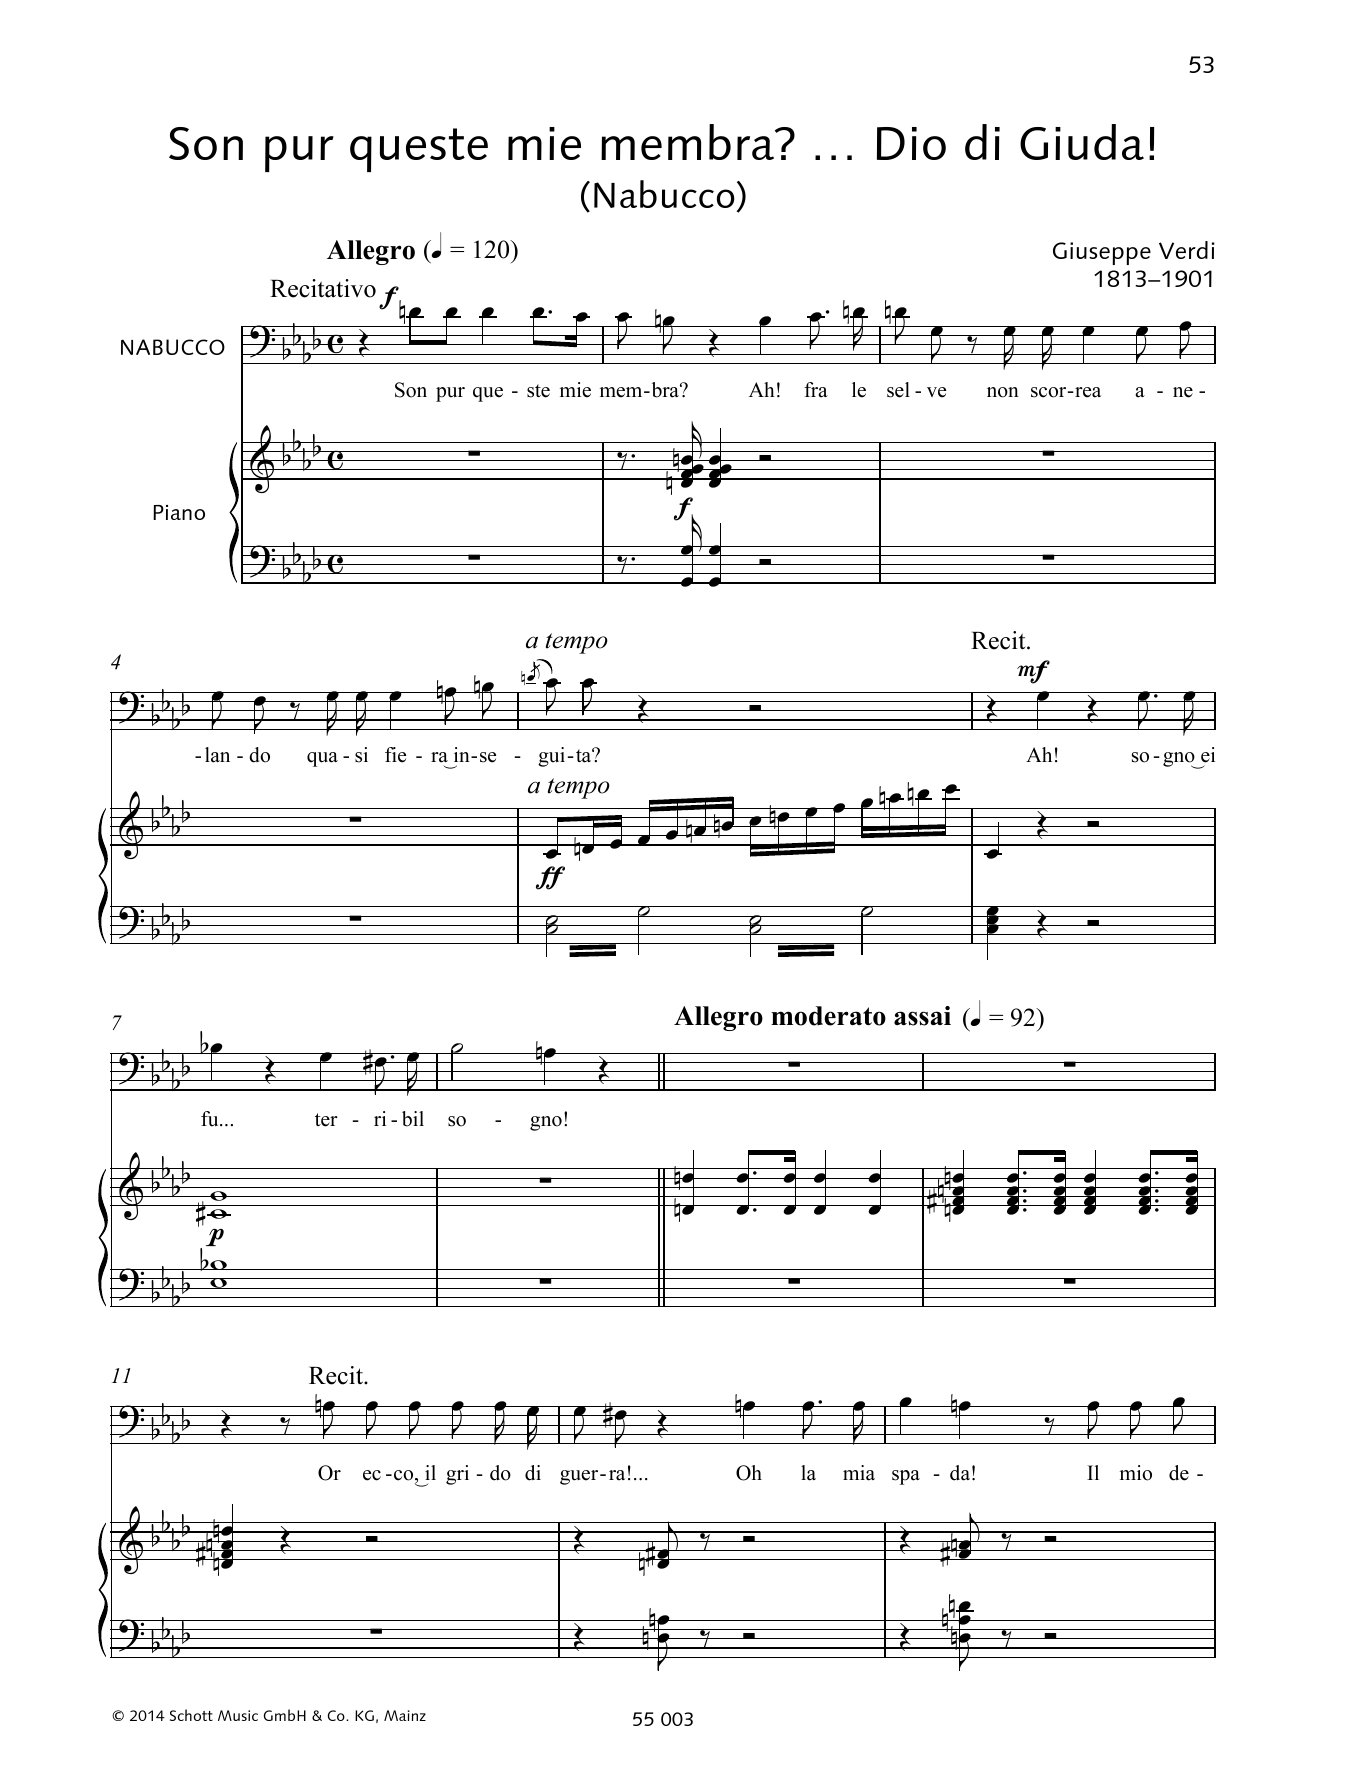 Francesca Licciarda Son pur queste mie membra?... Dio di Giuda! Sheet Music Notes & Chords for Piano & Vocal - Download or Print PDF